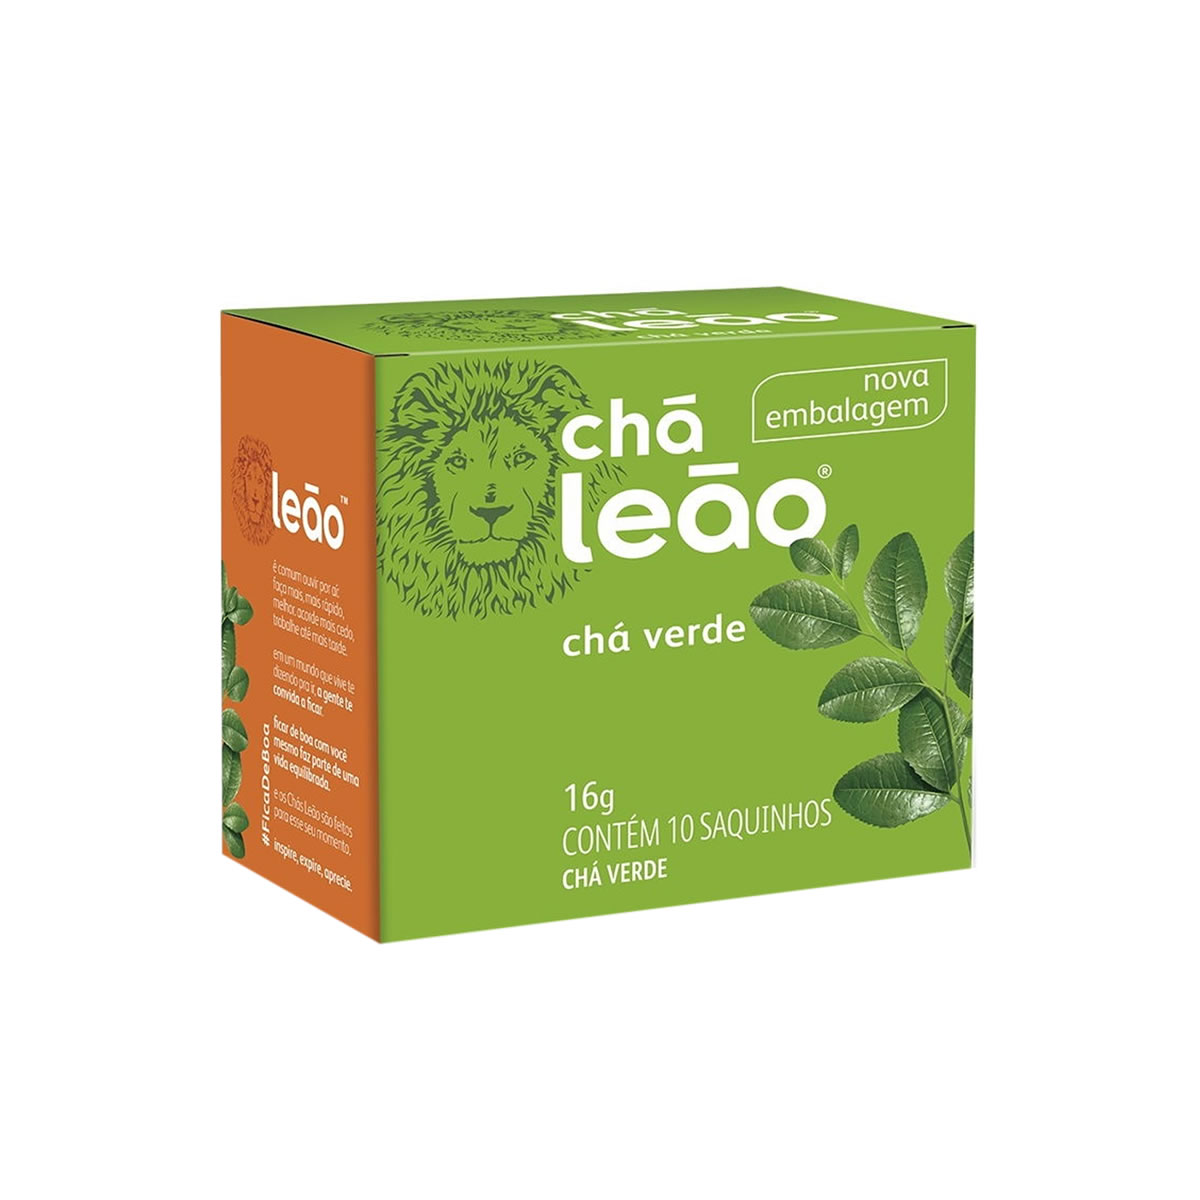 Chá Verde 10 sachês 1,6g - Chá Leão